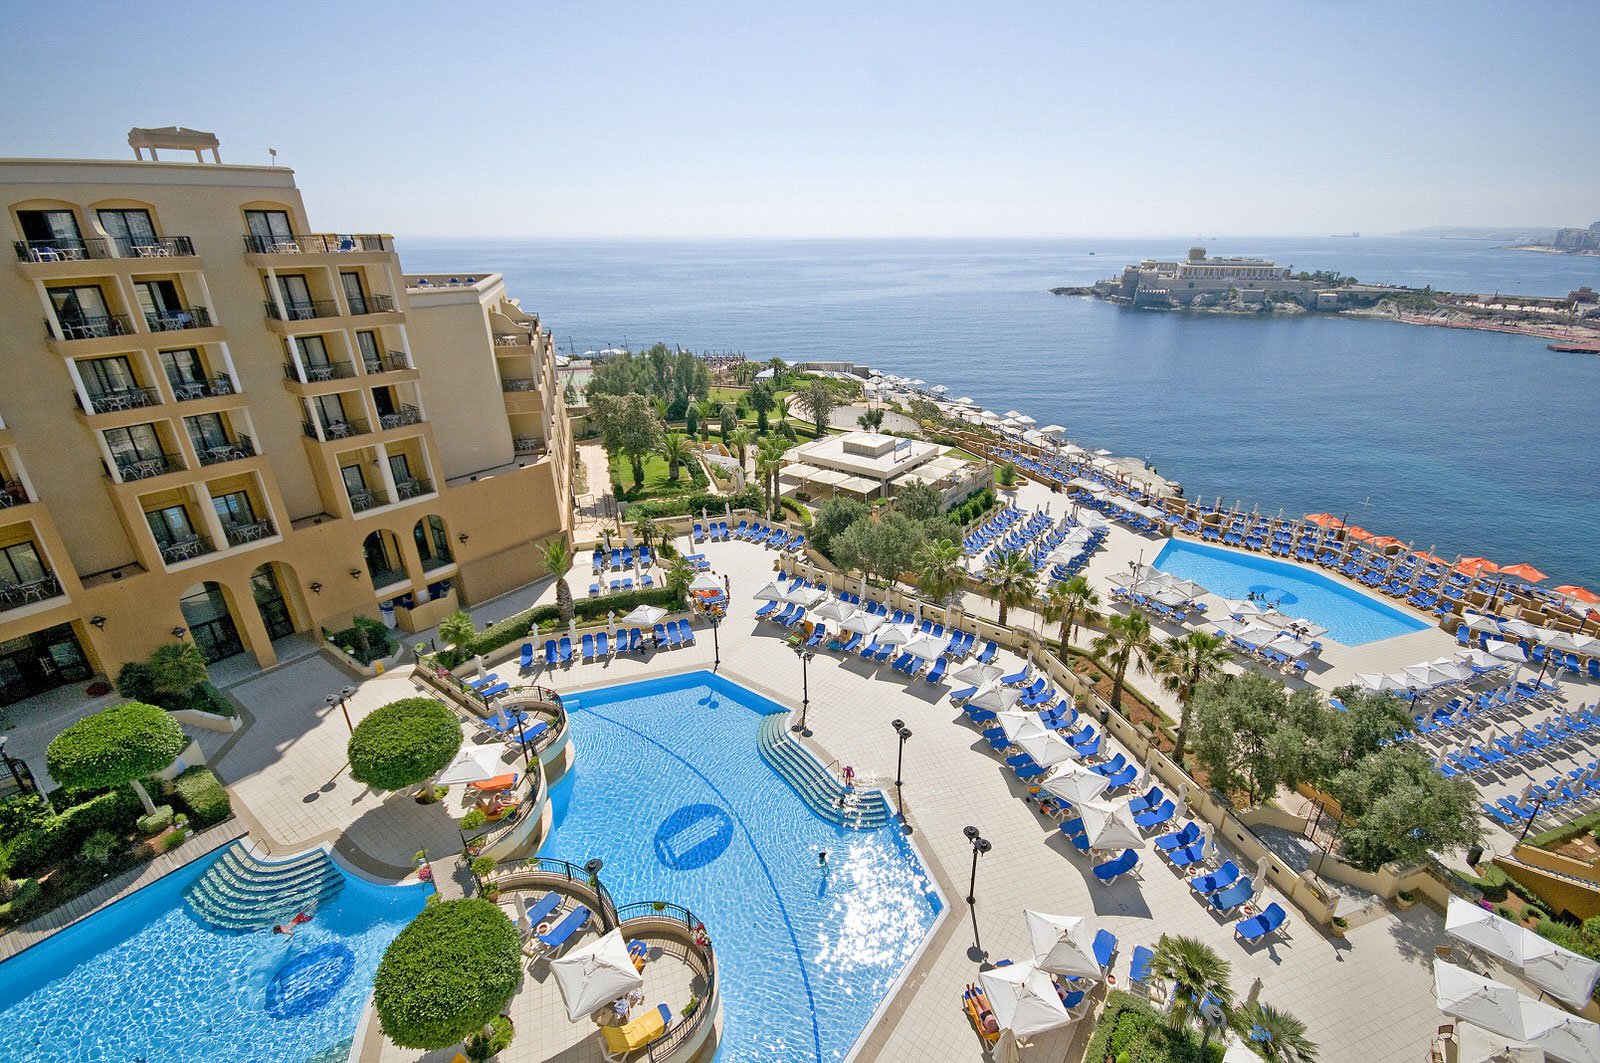 Отель Marina с панорамным видом на бухту Сент-Джордж расположен на Мальте. 